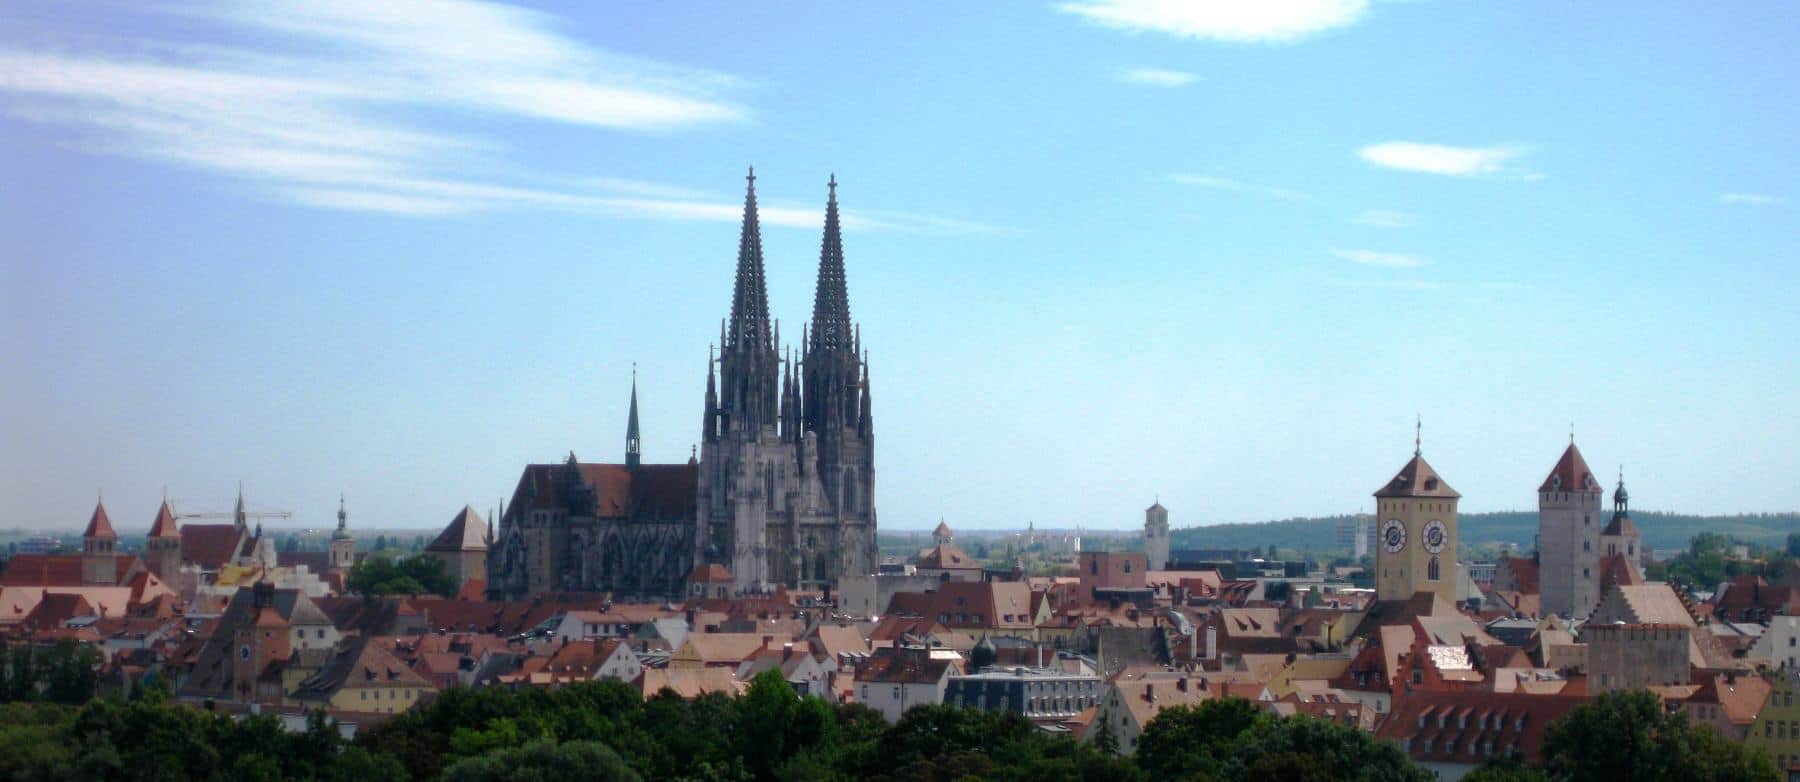 Stadtansicht_c__Regensburg_Tourismus-IBW